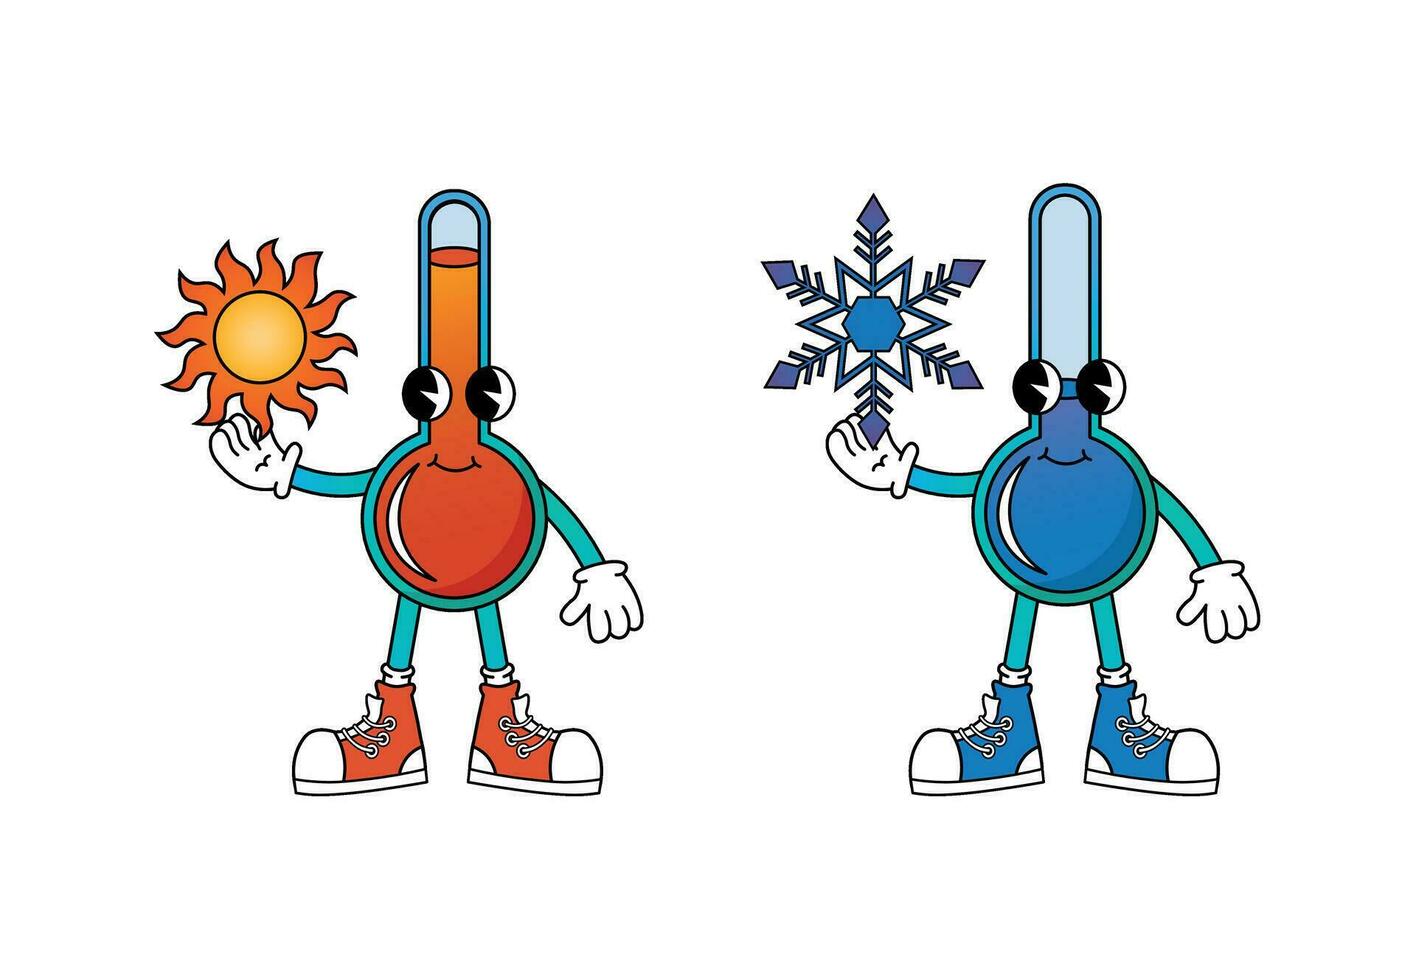 chaud et du froid Température thermomètre personnages dans Années 70 dessin animé style vecteur